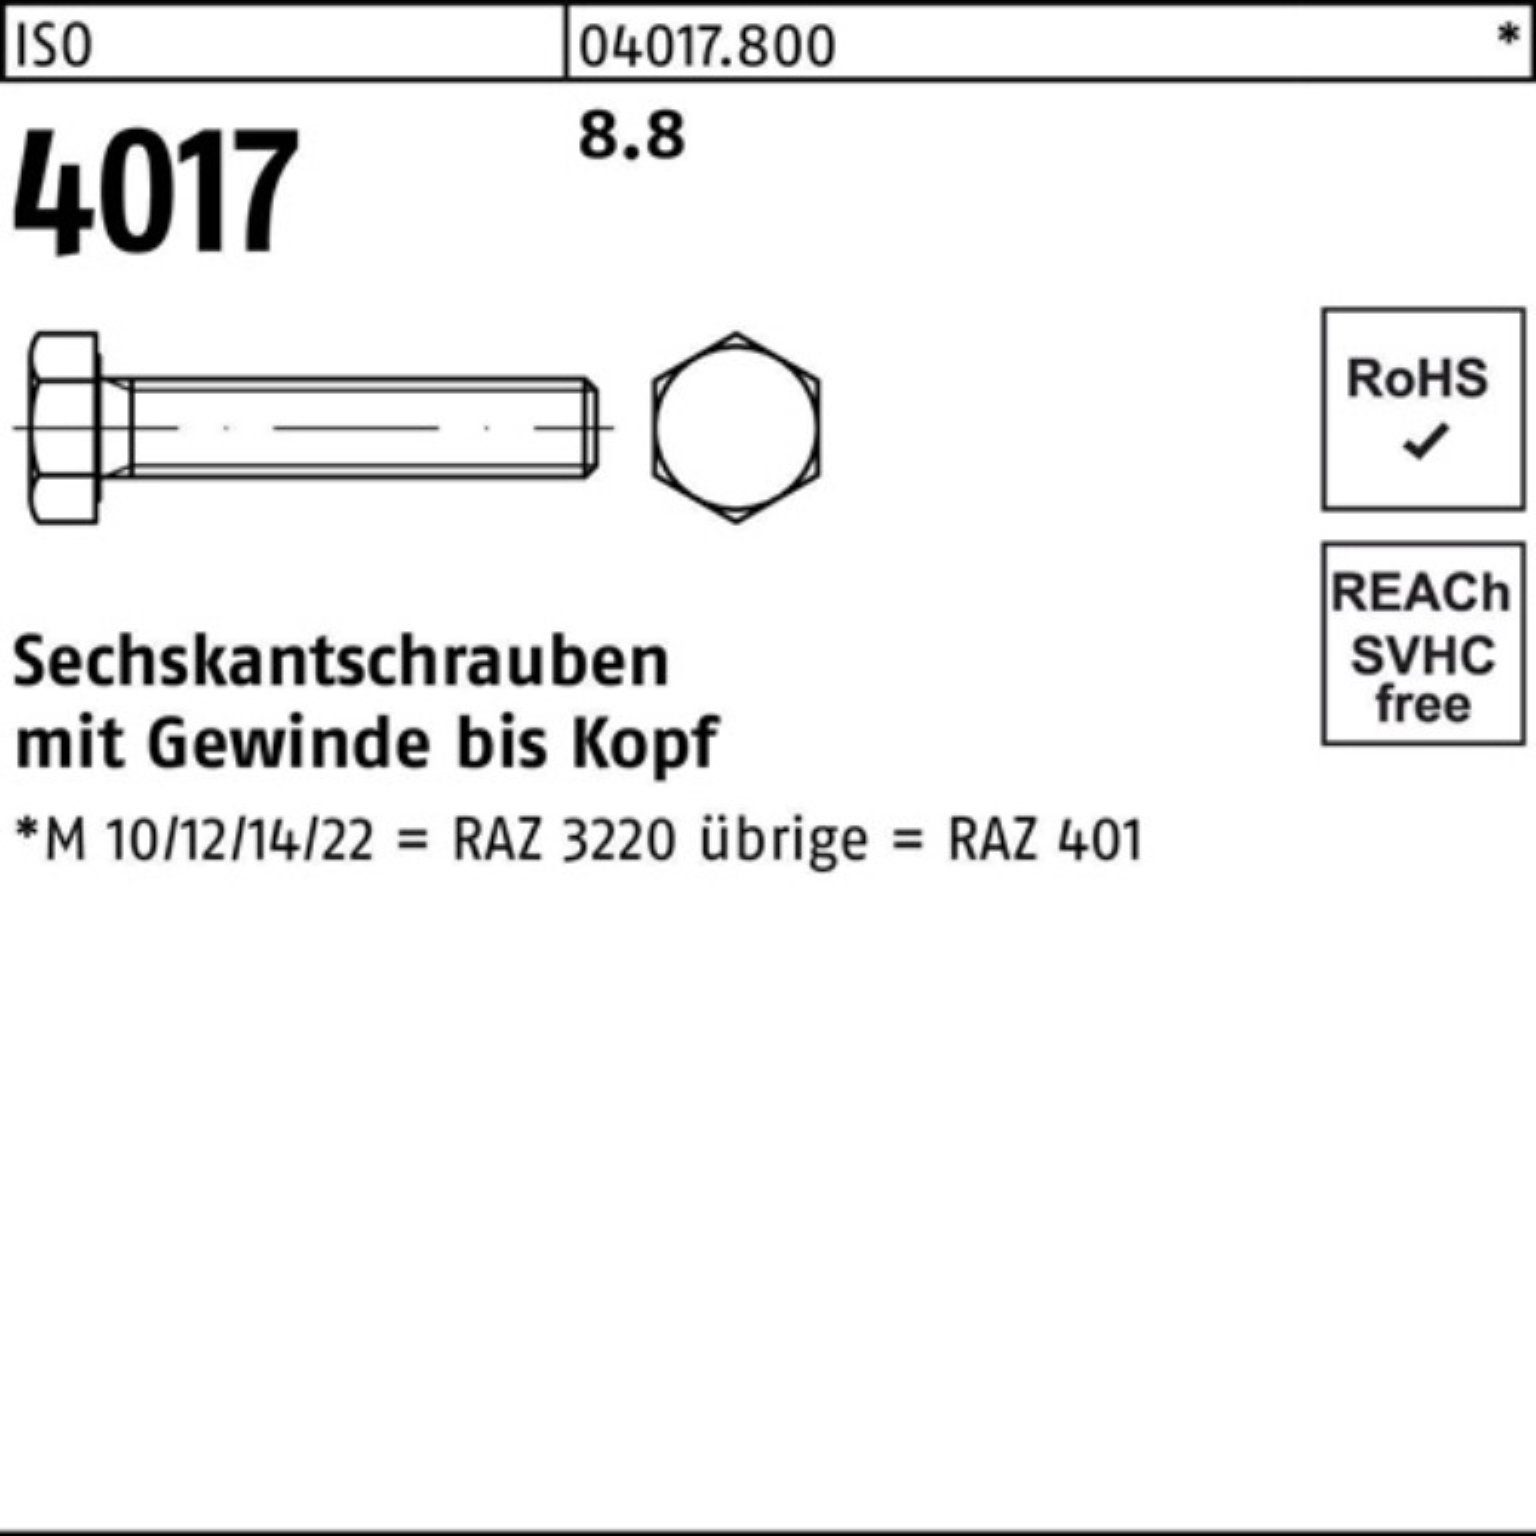 M5x VG ISO Bufab 500 500er ISO Sechskantschraube Stück 4017 Sechskantschraube Pack 8.8 18 401